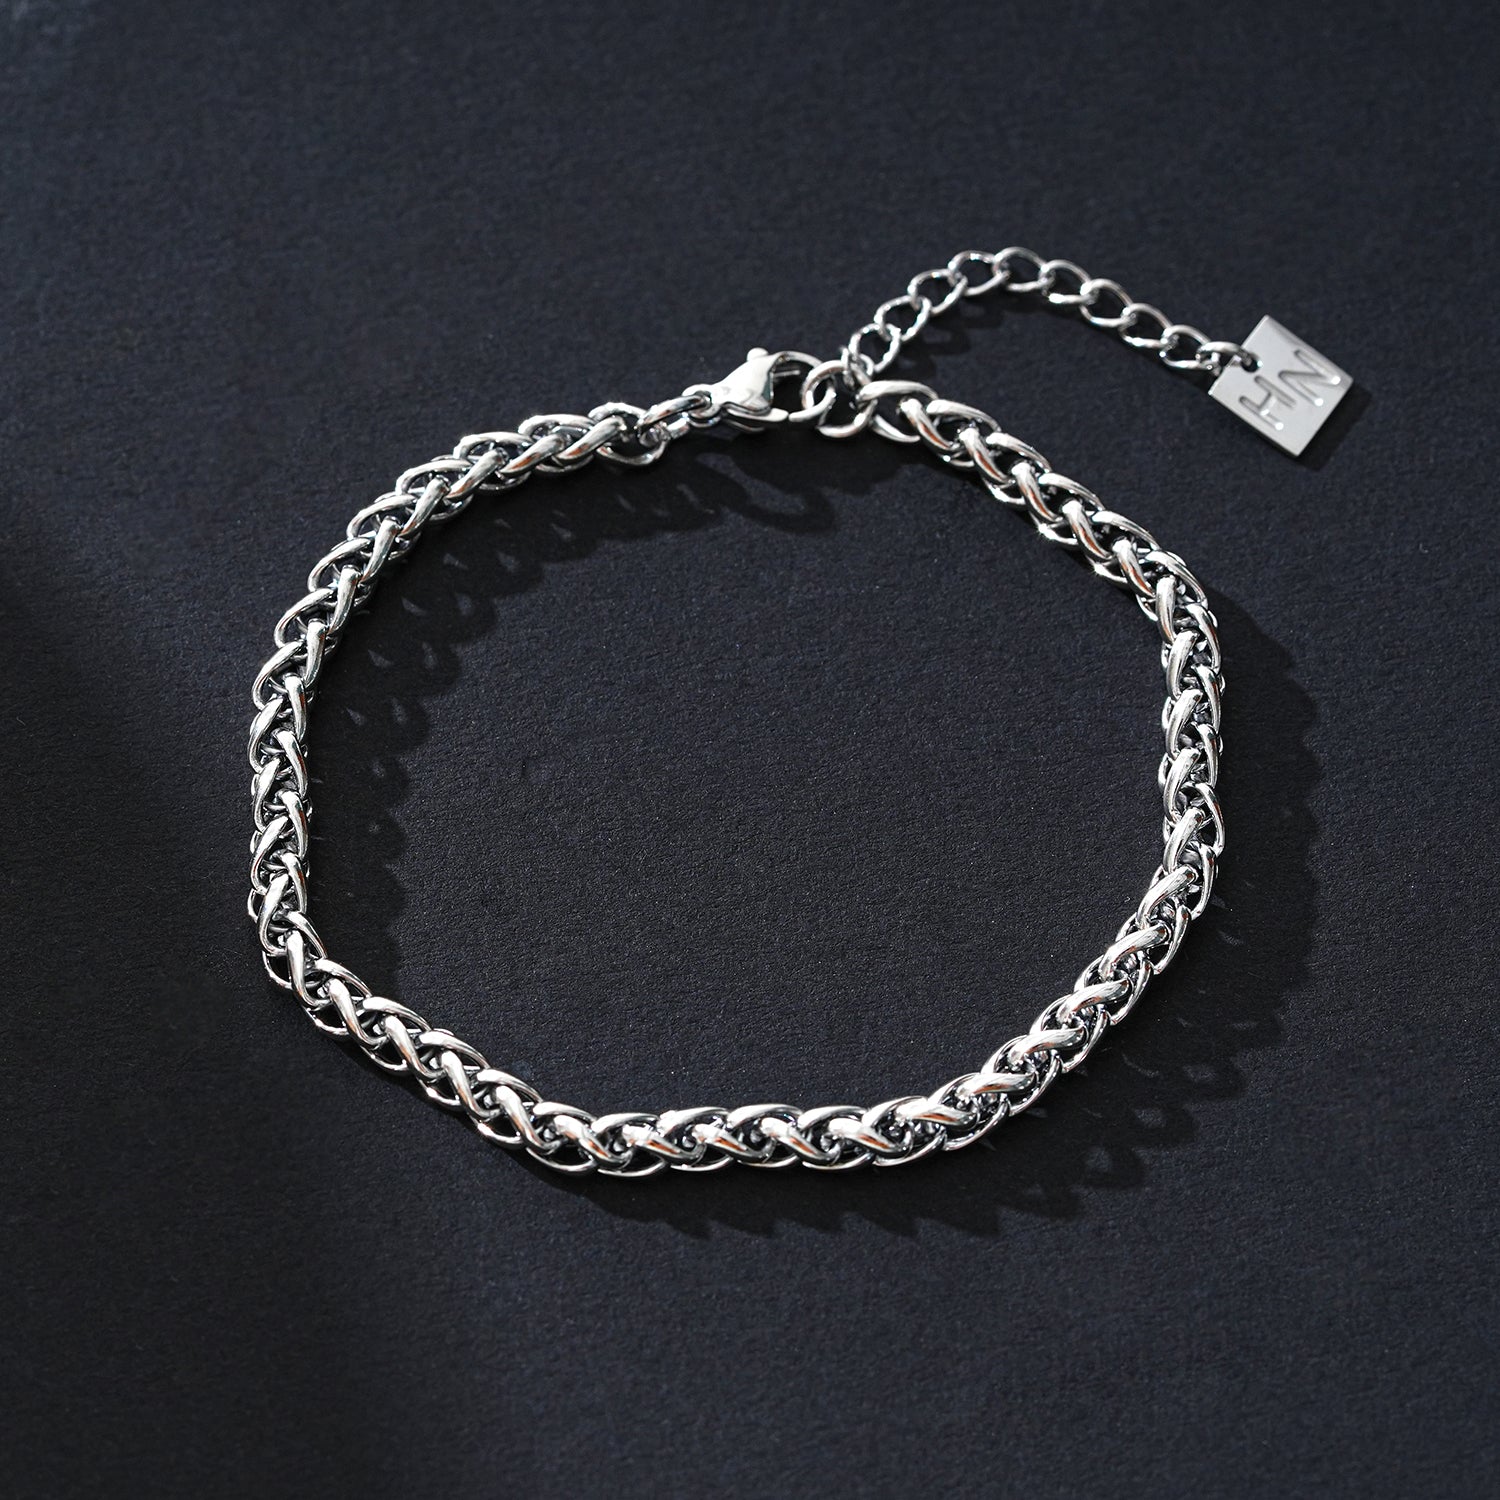 Style ALDWYCH 8118: Unisex Chunky Silver Bracelet - Bold, Stylish &amp; Versatile.